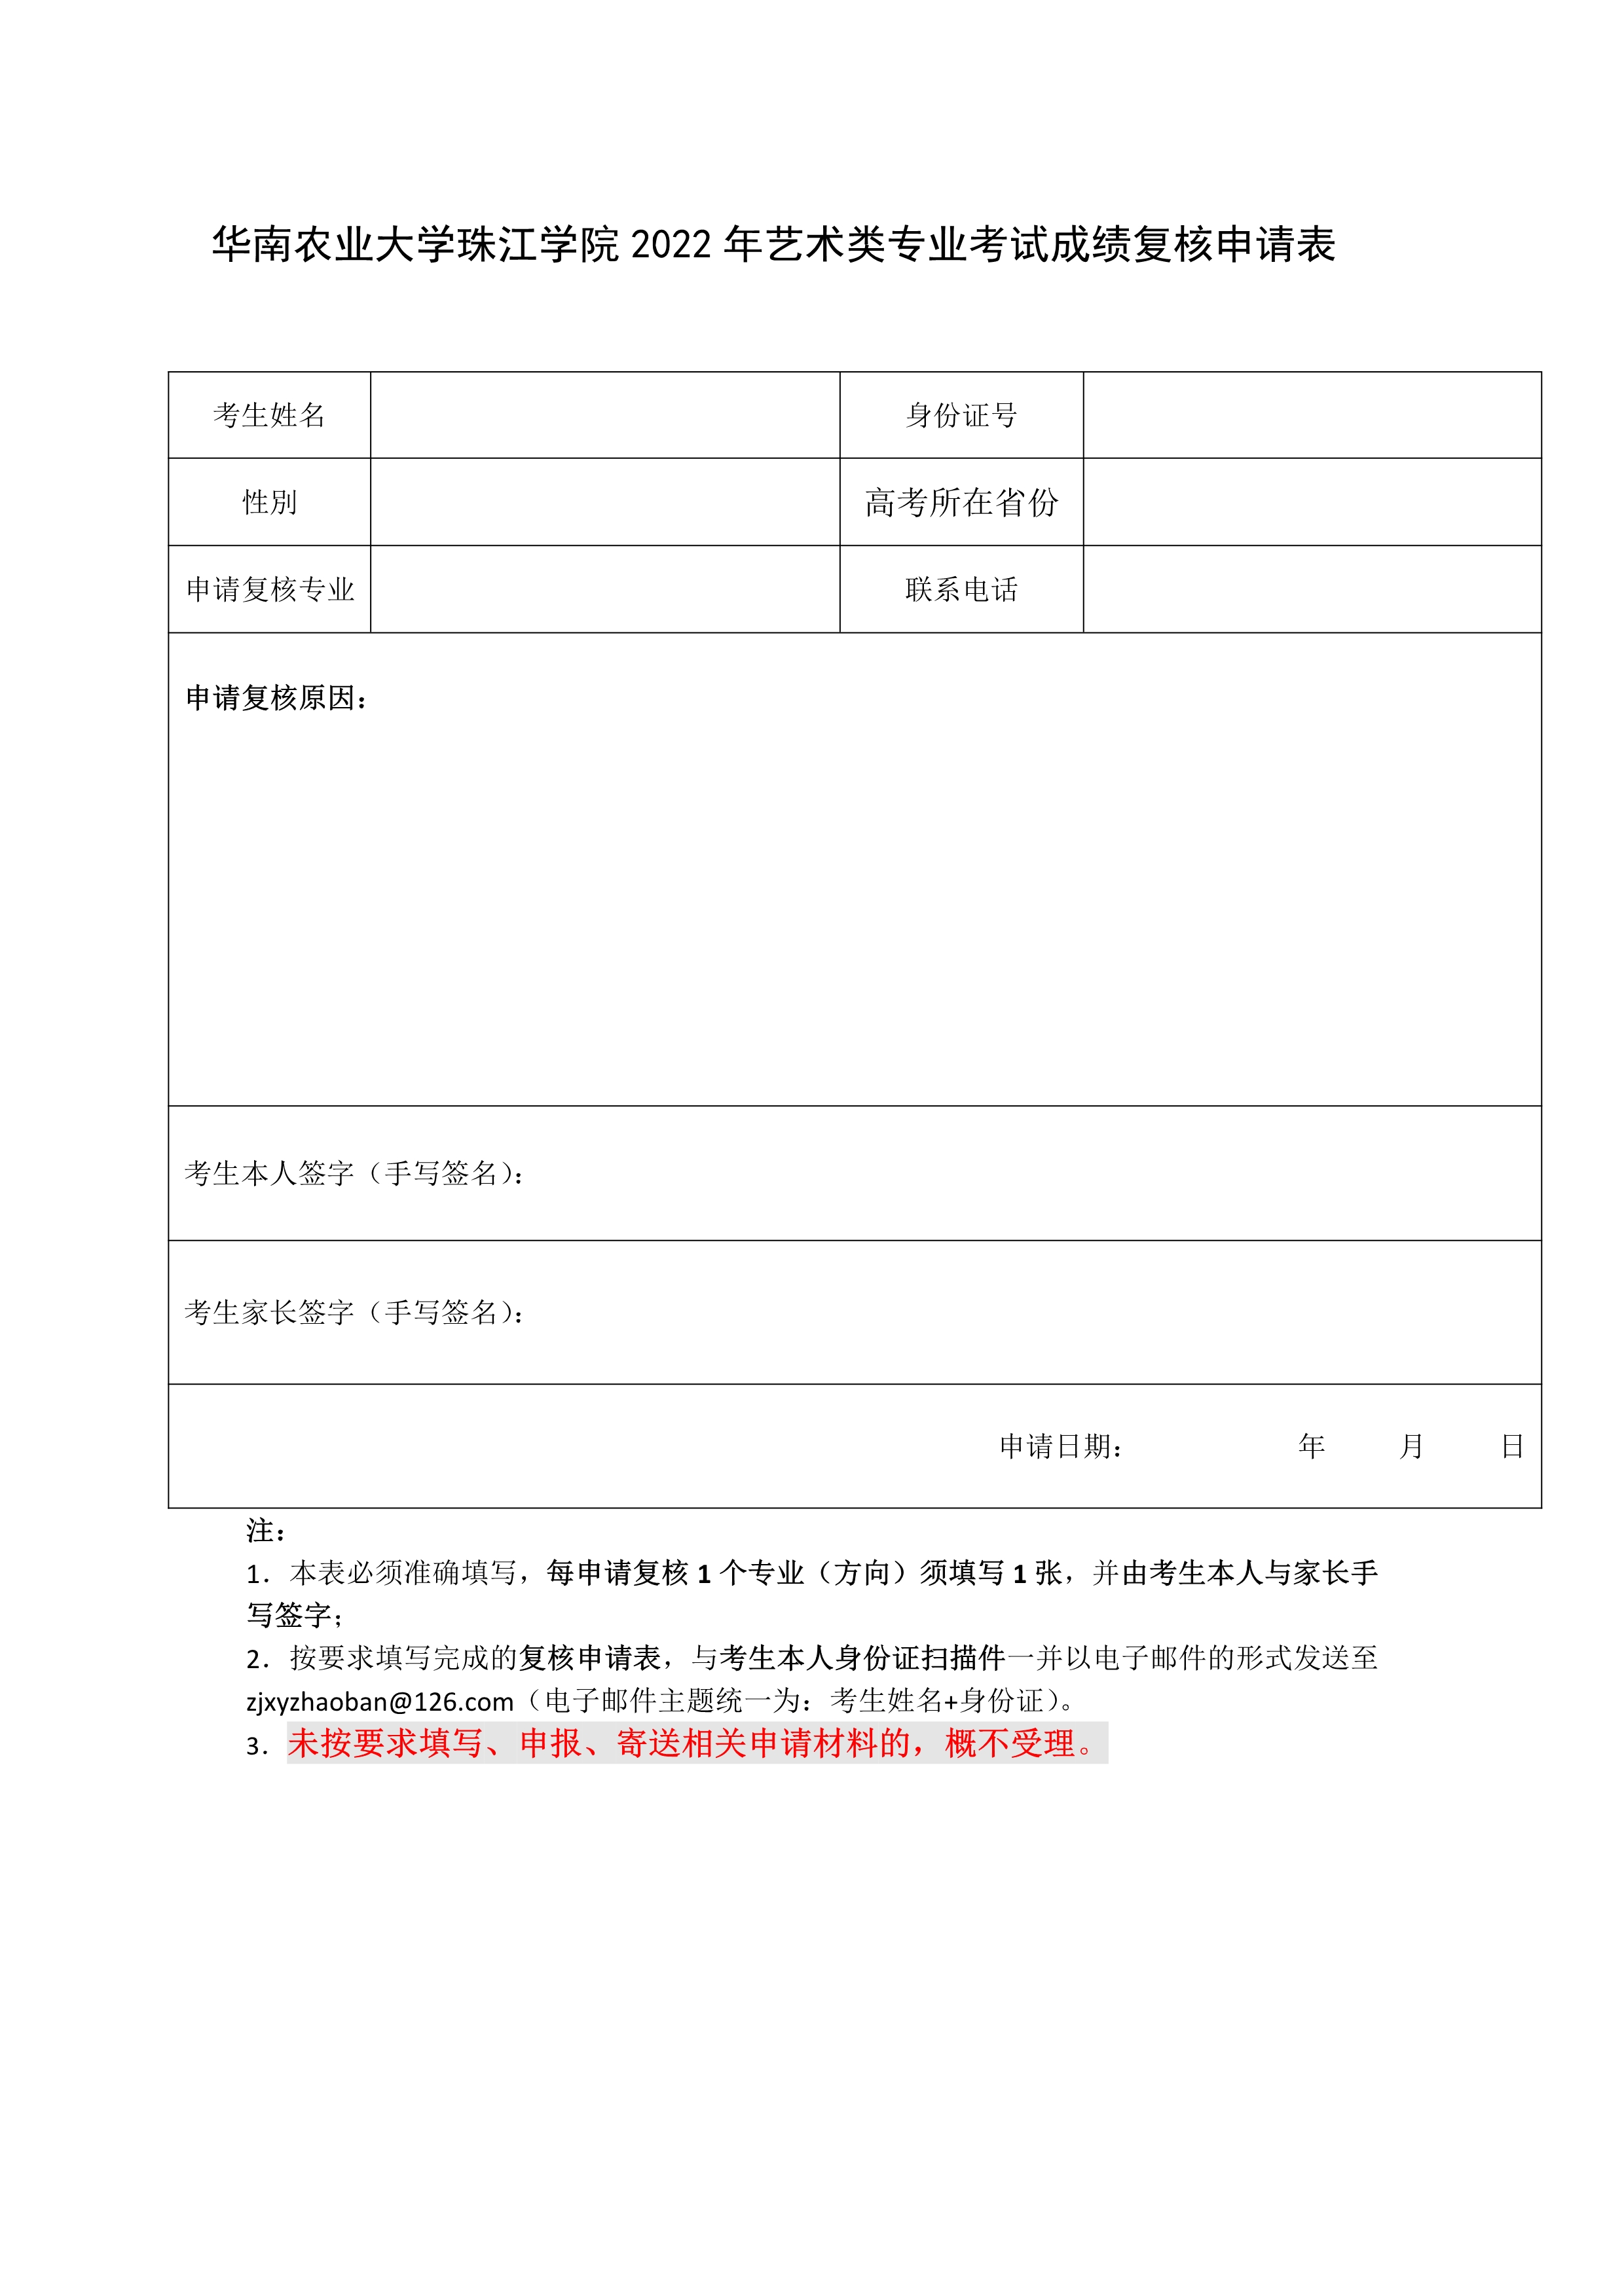 华南农业大学珠江学院校考成绩复核申请表_1.jpg